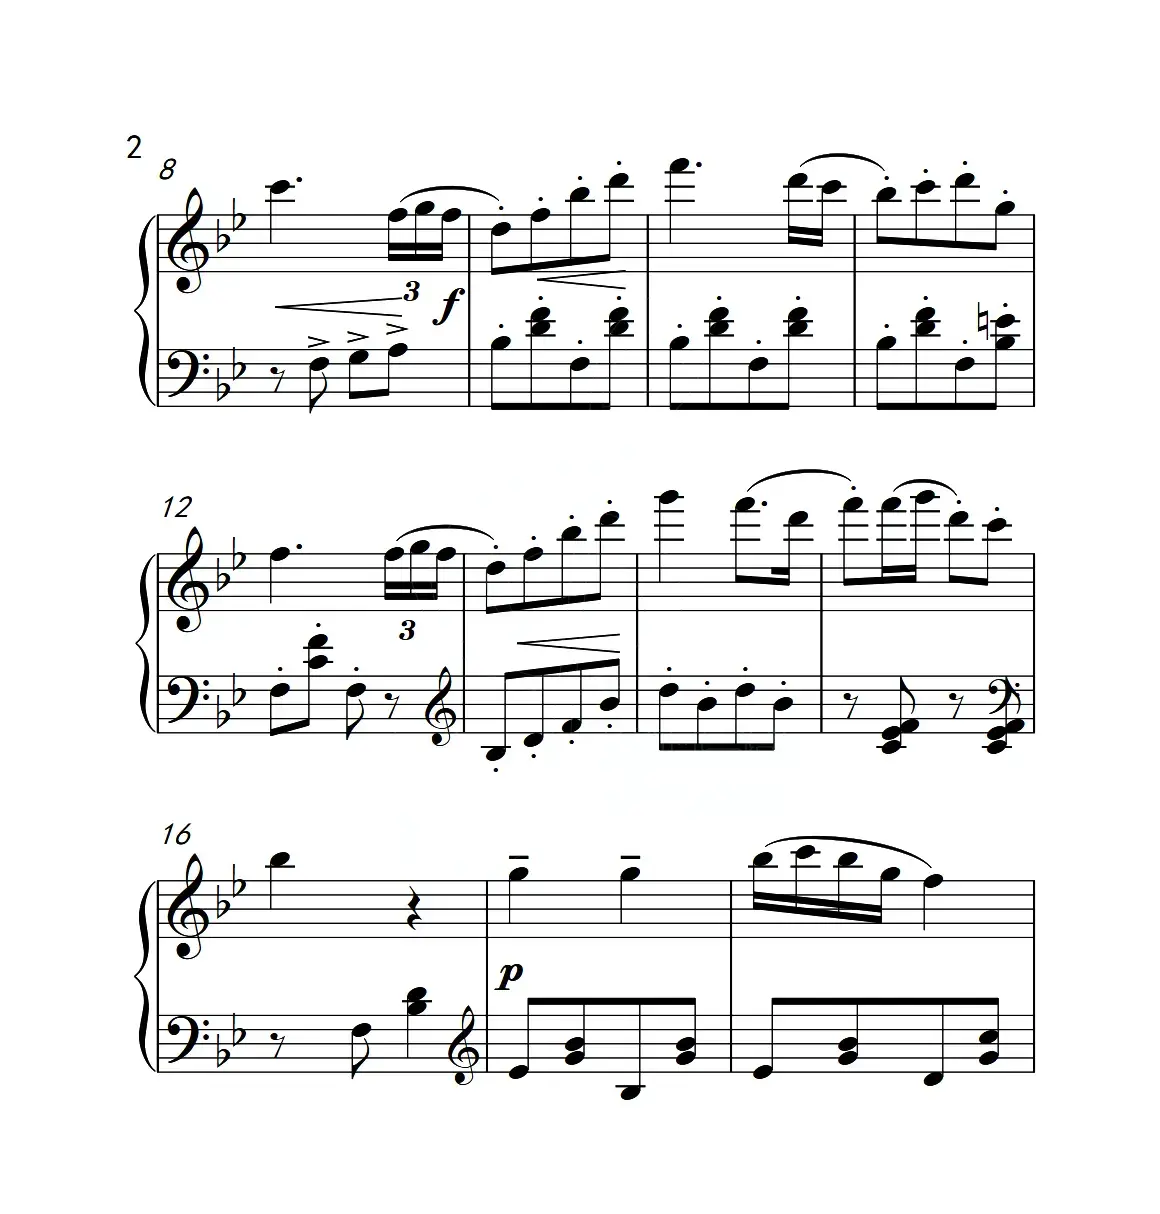 第三级 小风车（中国音乐学院钢琴考级作品1~6级）